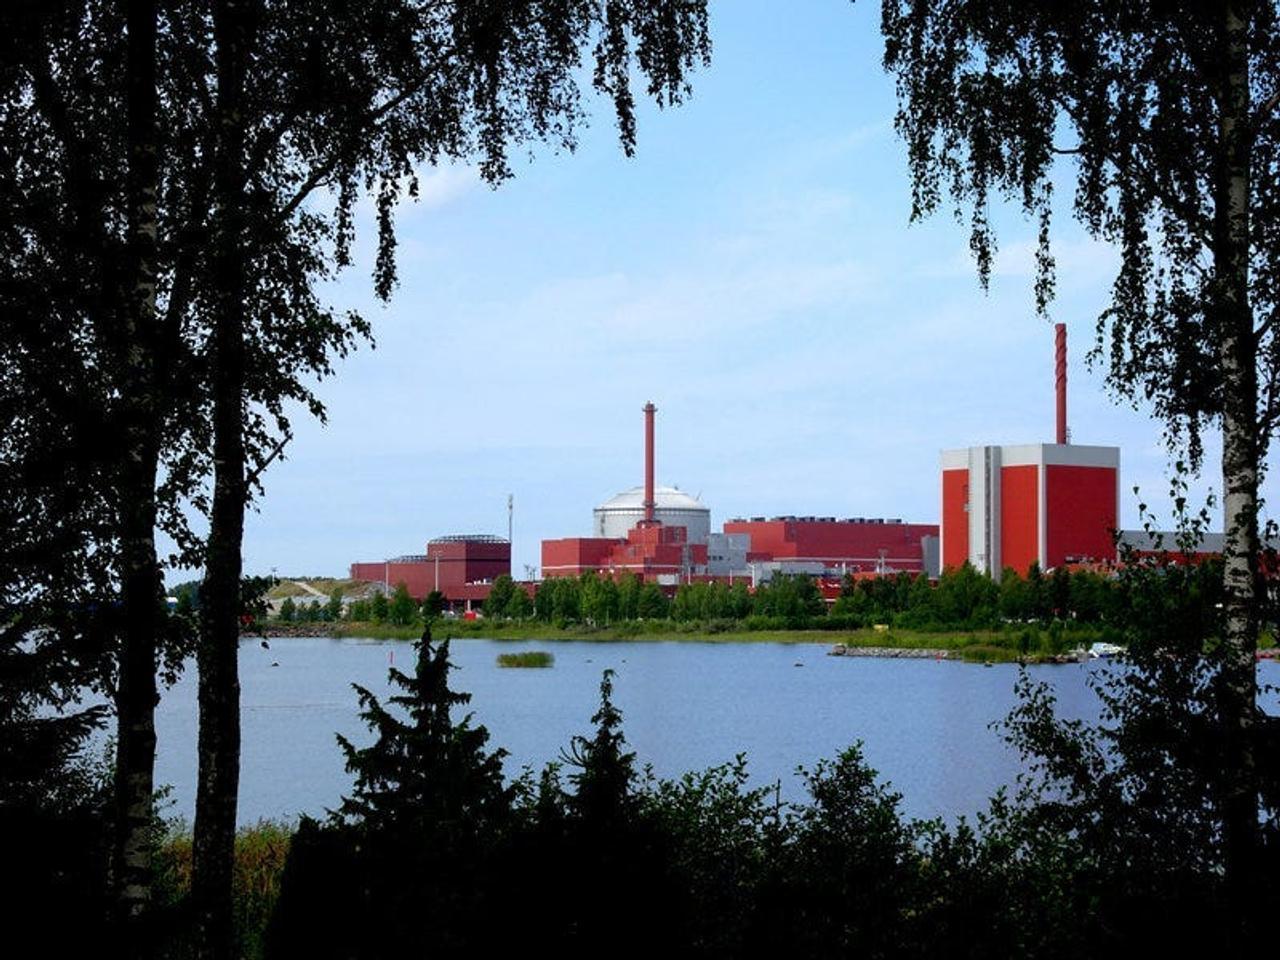 フィンランド、電気料金がマイナスに…新原子炉稼働、雪解け水、国民の節電などが要因